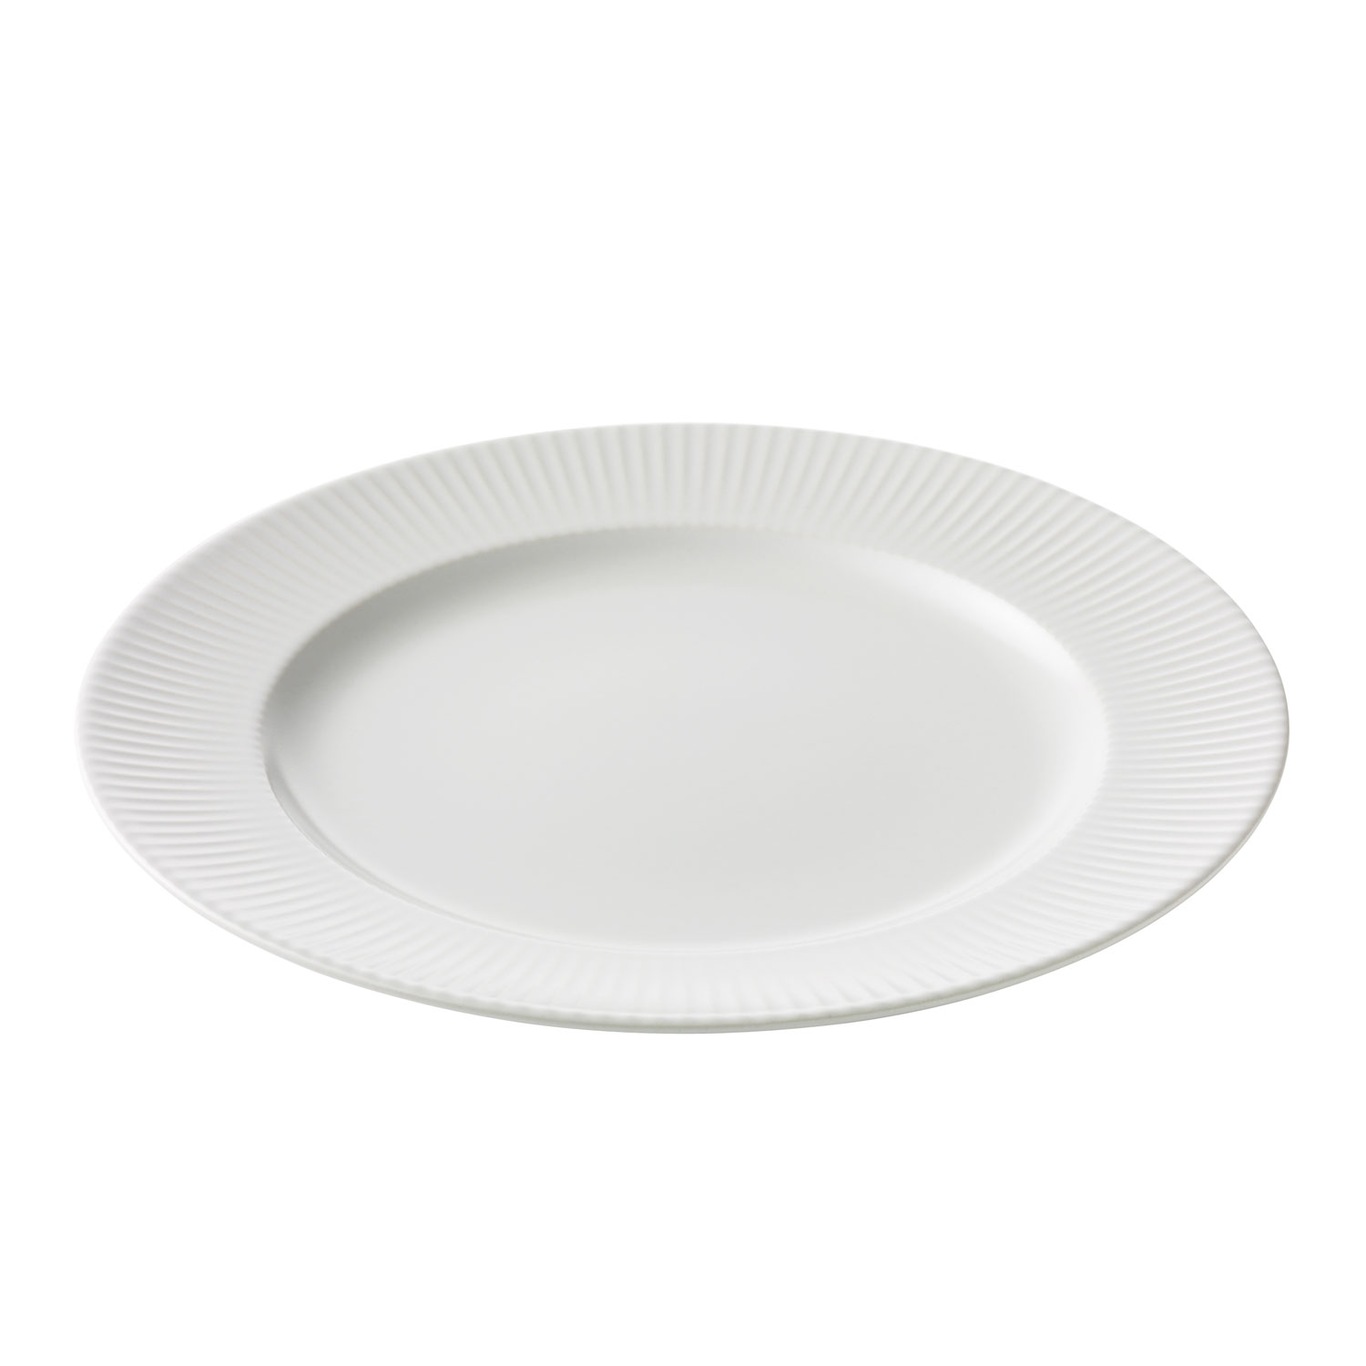 Groovy Dinner Plate 27 cm, White